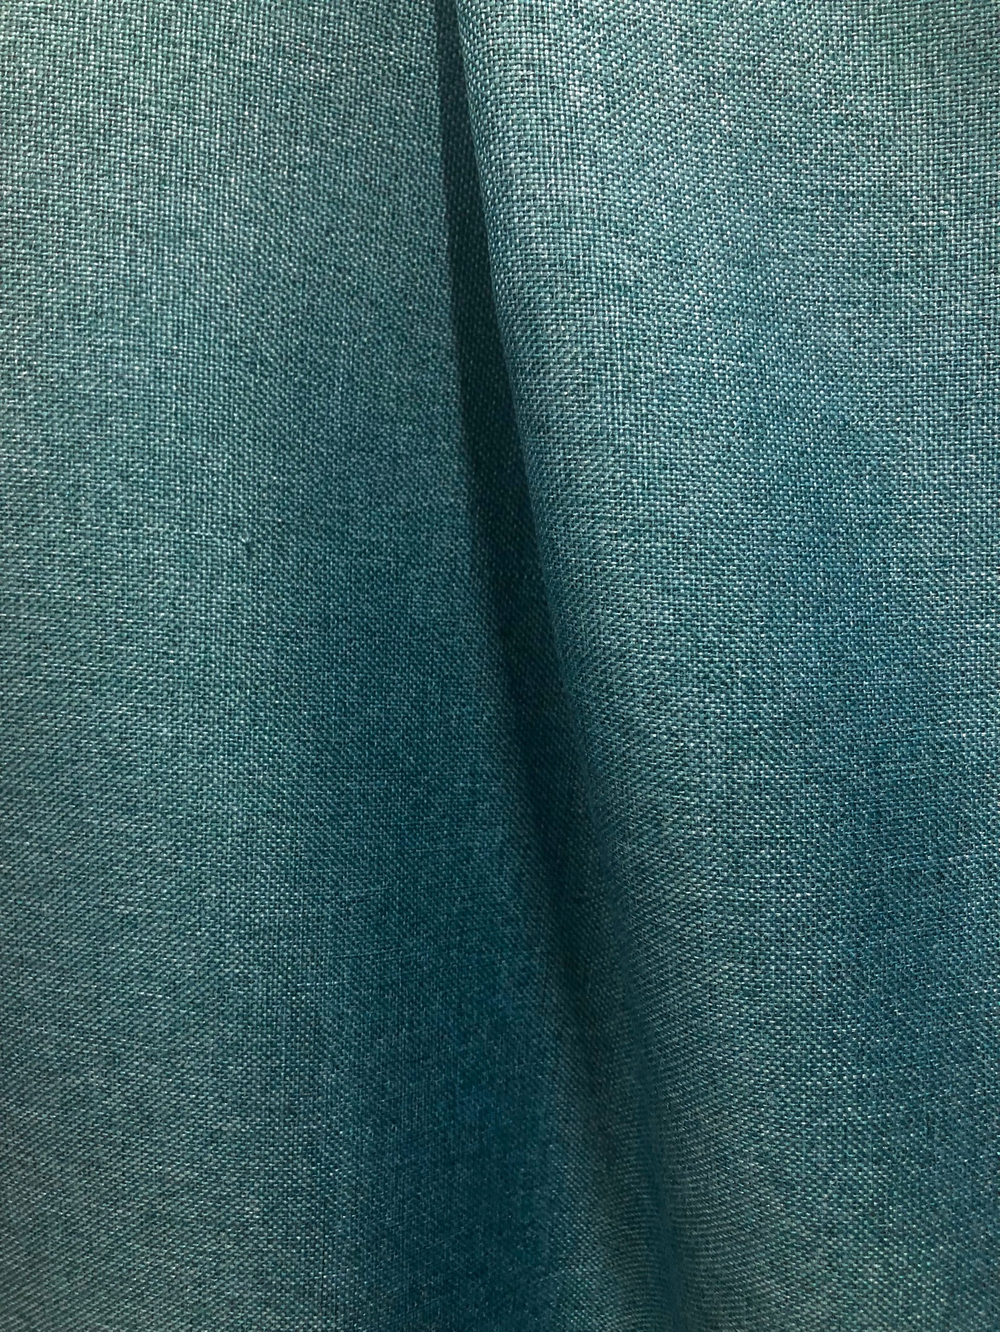 Ткань портьерная Блэкаут-лен, цвет бирюза, артикул 327622